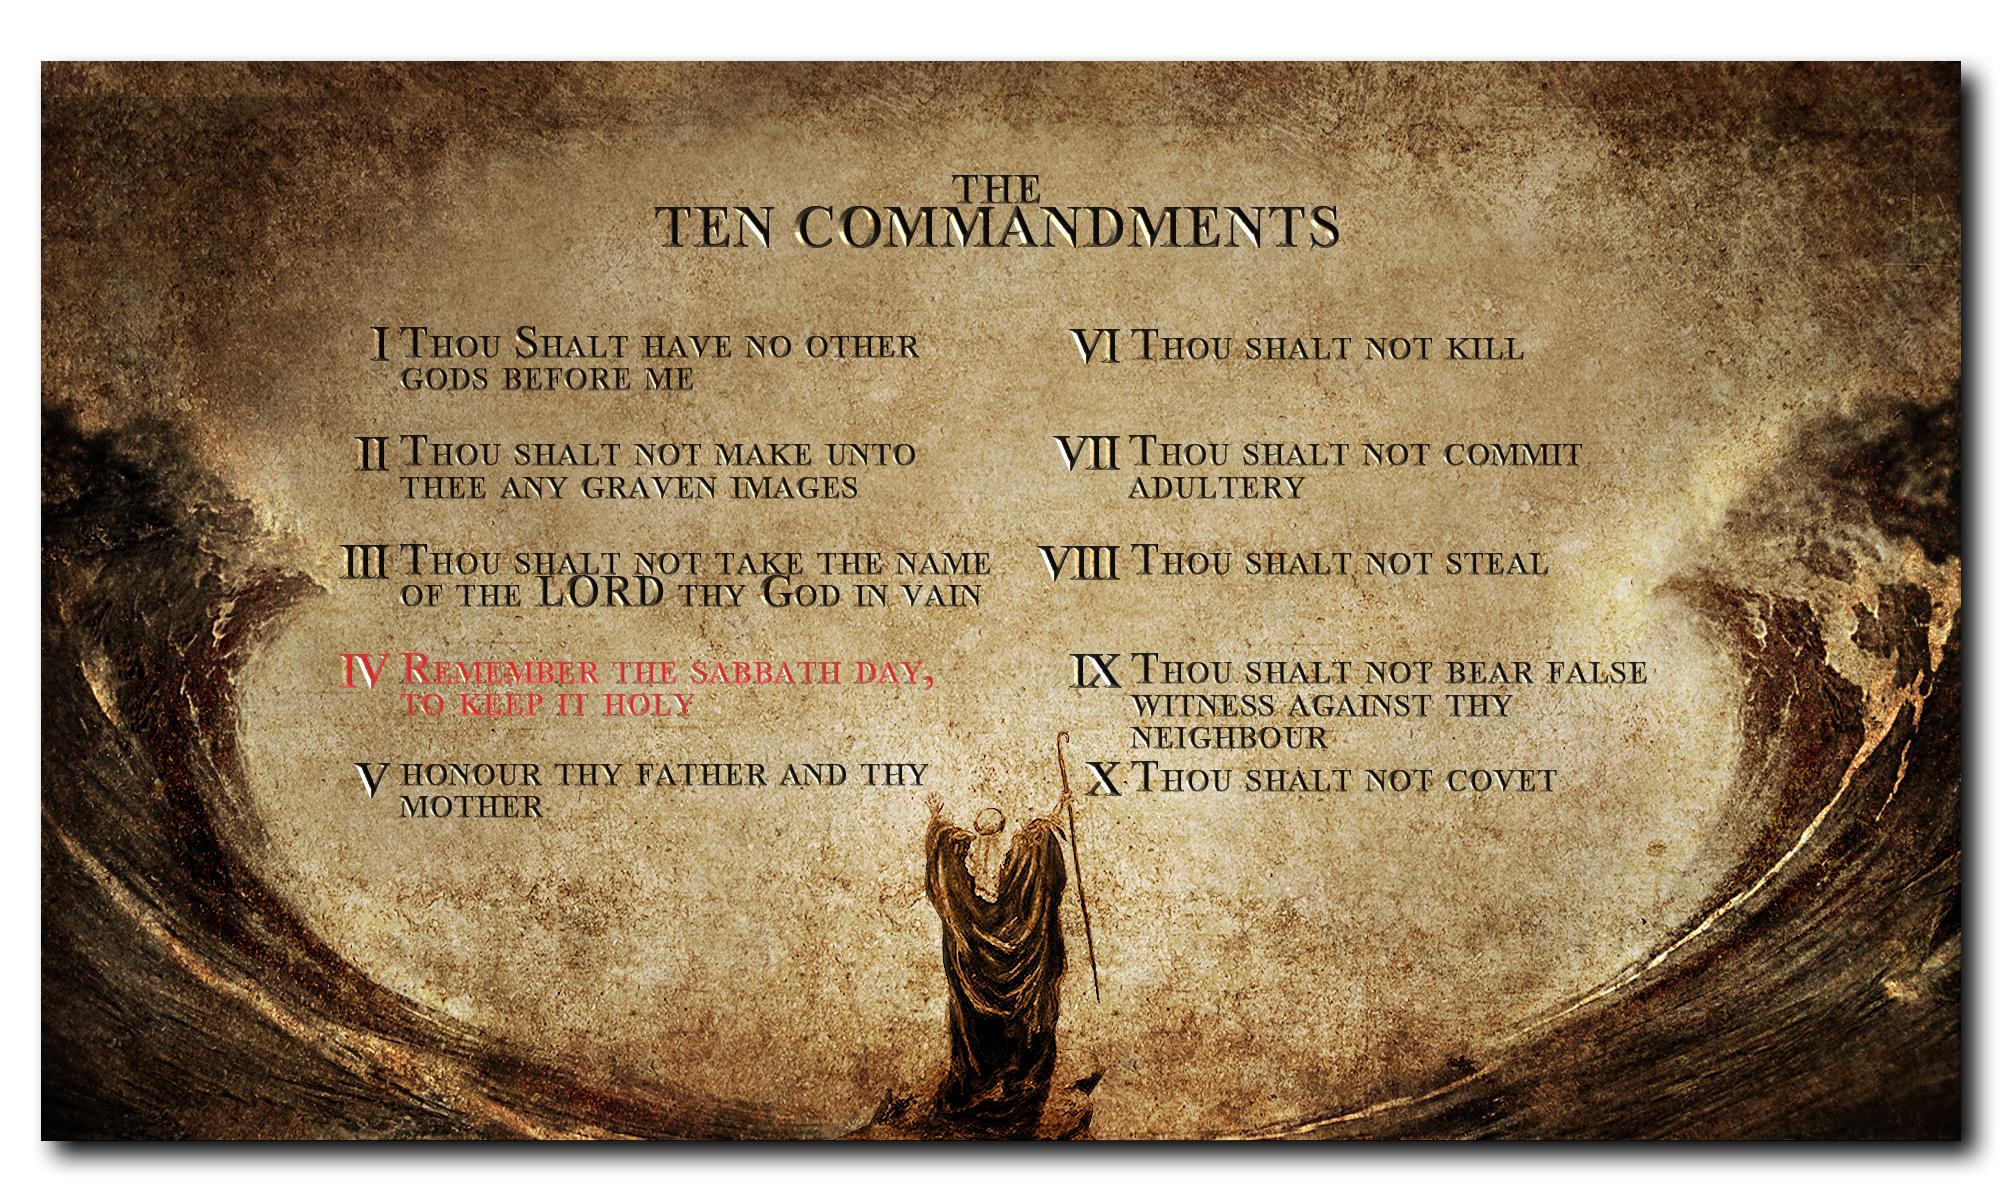 10 Commandments - Ten Commandments , HD Wallpaper & Backgrounds